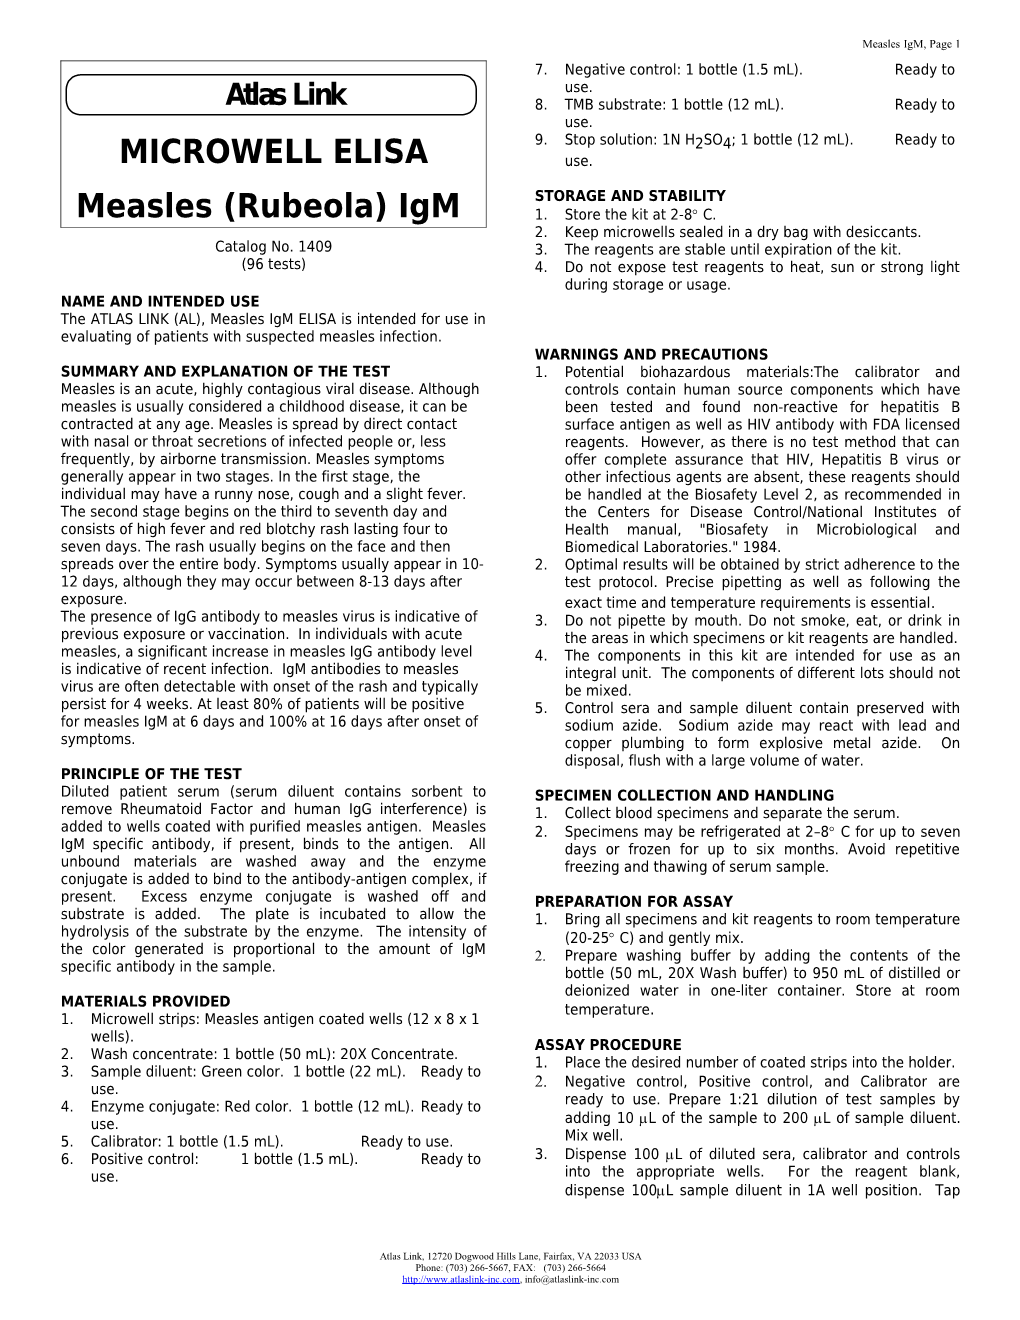 Measles (Rubeola) Igm